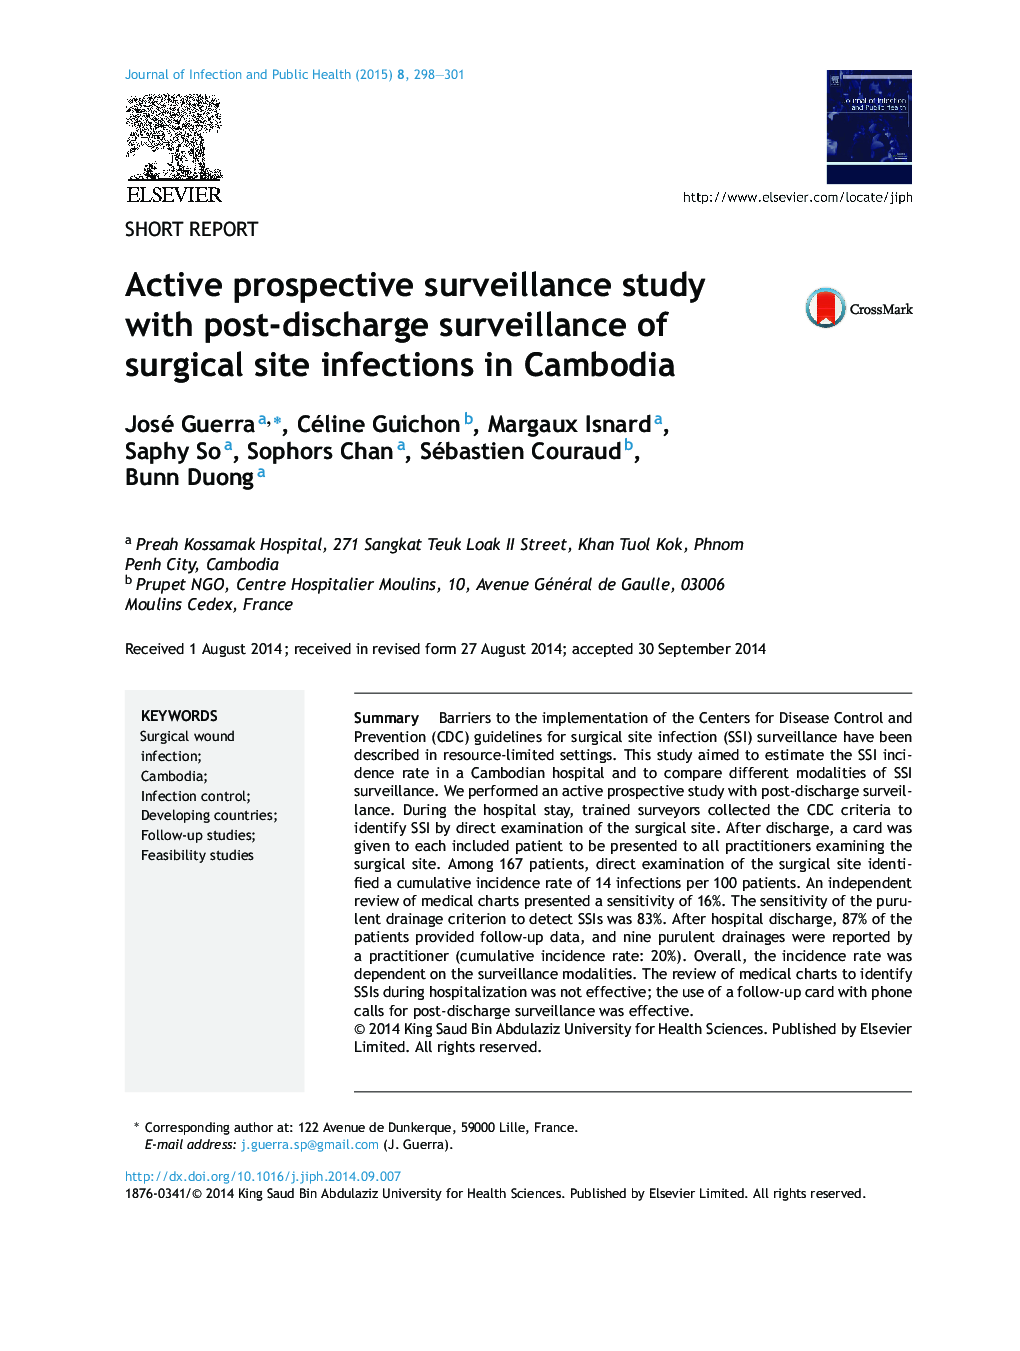 نظارت بر آگاهانه آینده پژوهی با نظارت پس از تخلیه عفونت های جراحی در کامبوج 